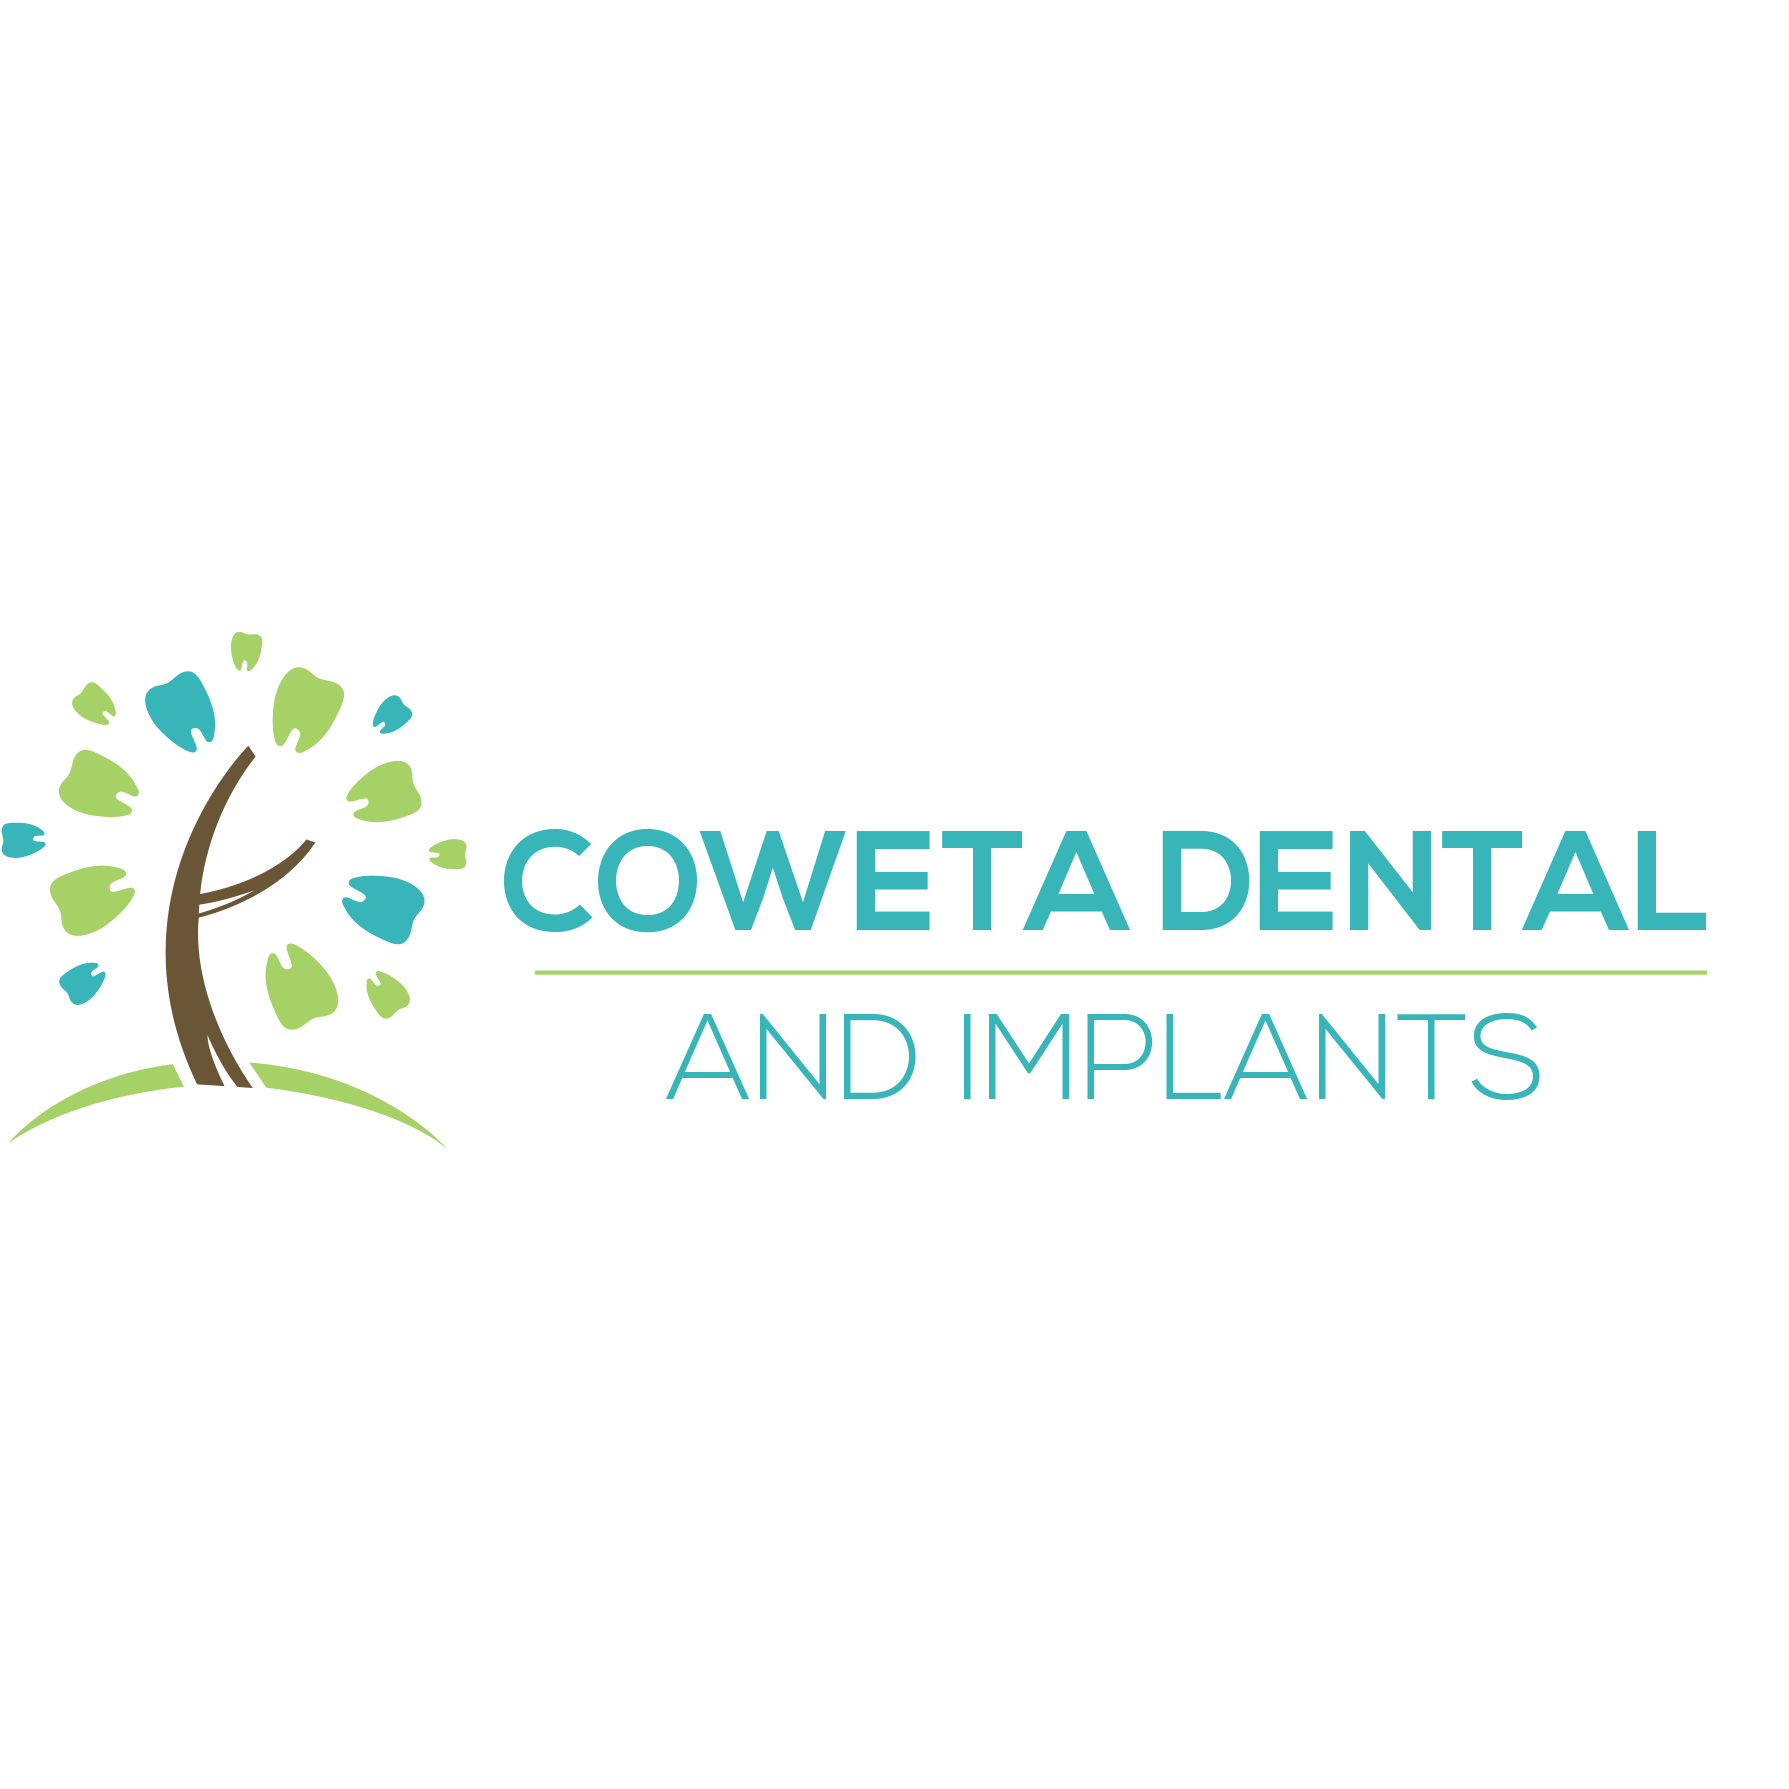 Coweta Dental and Implants - Coweta, OK 74429 - (918)279-8880 | ShowMeLocal.com